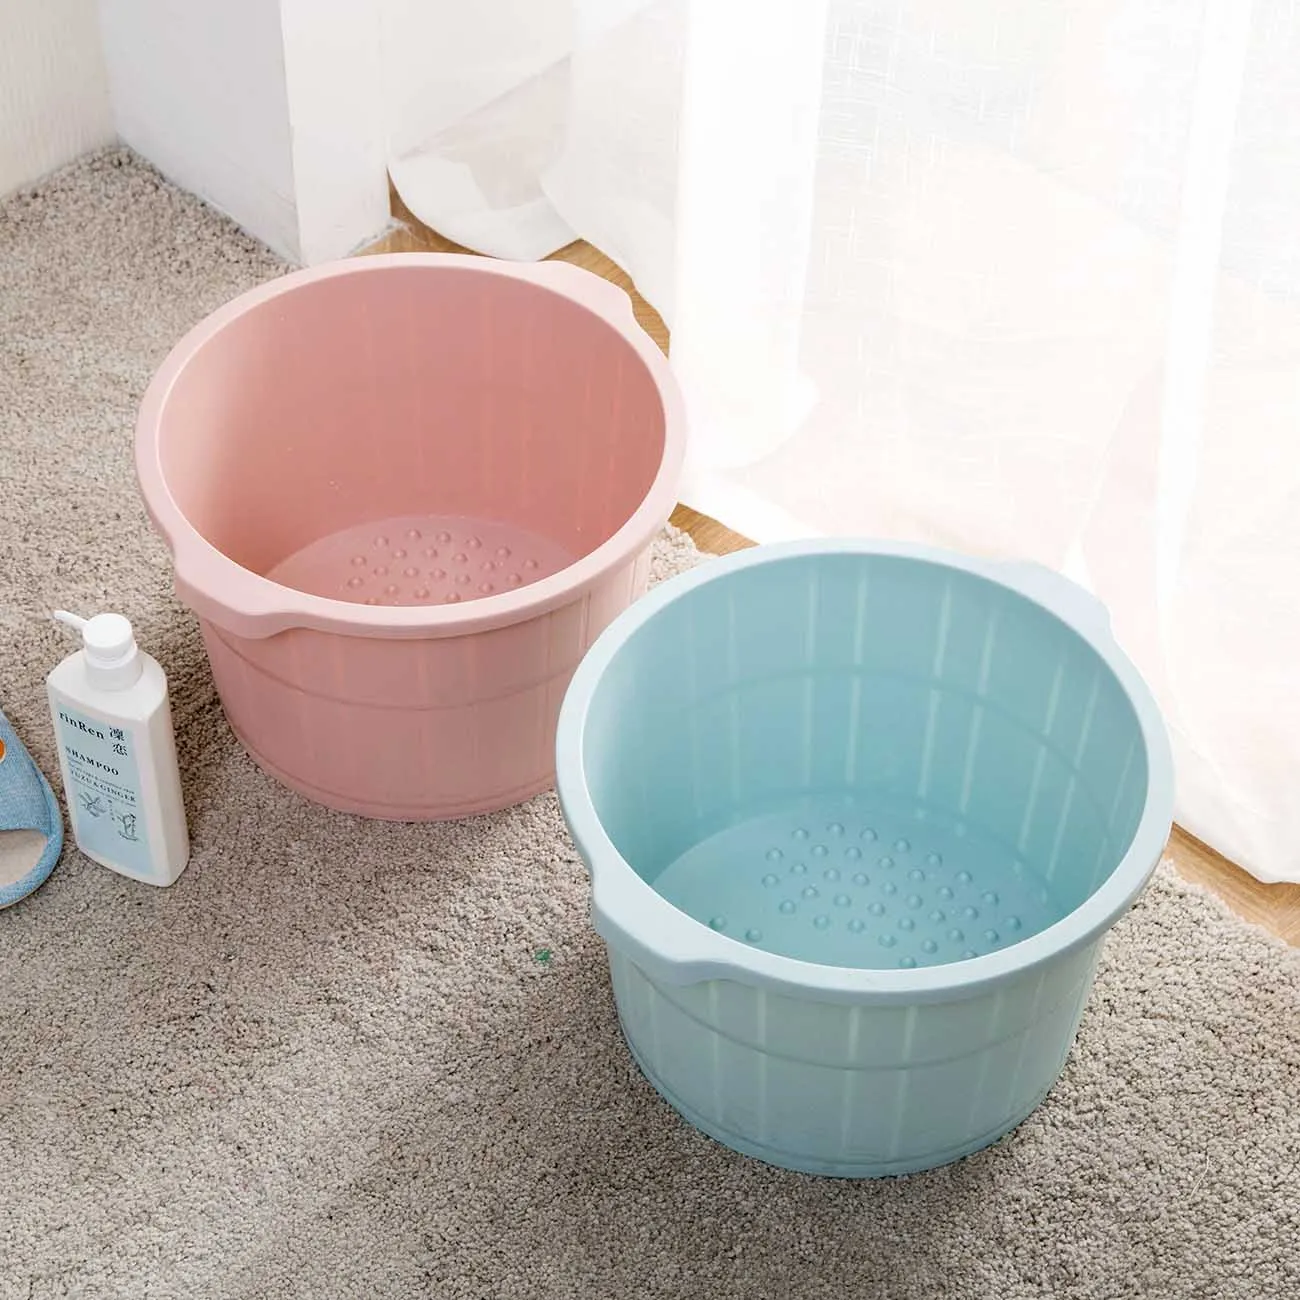 OTHERHOUSE пластиковый ковш коврик для ванной ковш для мытья ног ванной комнаты корзина для белья портативный контейнер для воды предметы домашнего обихода